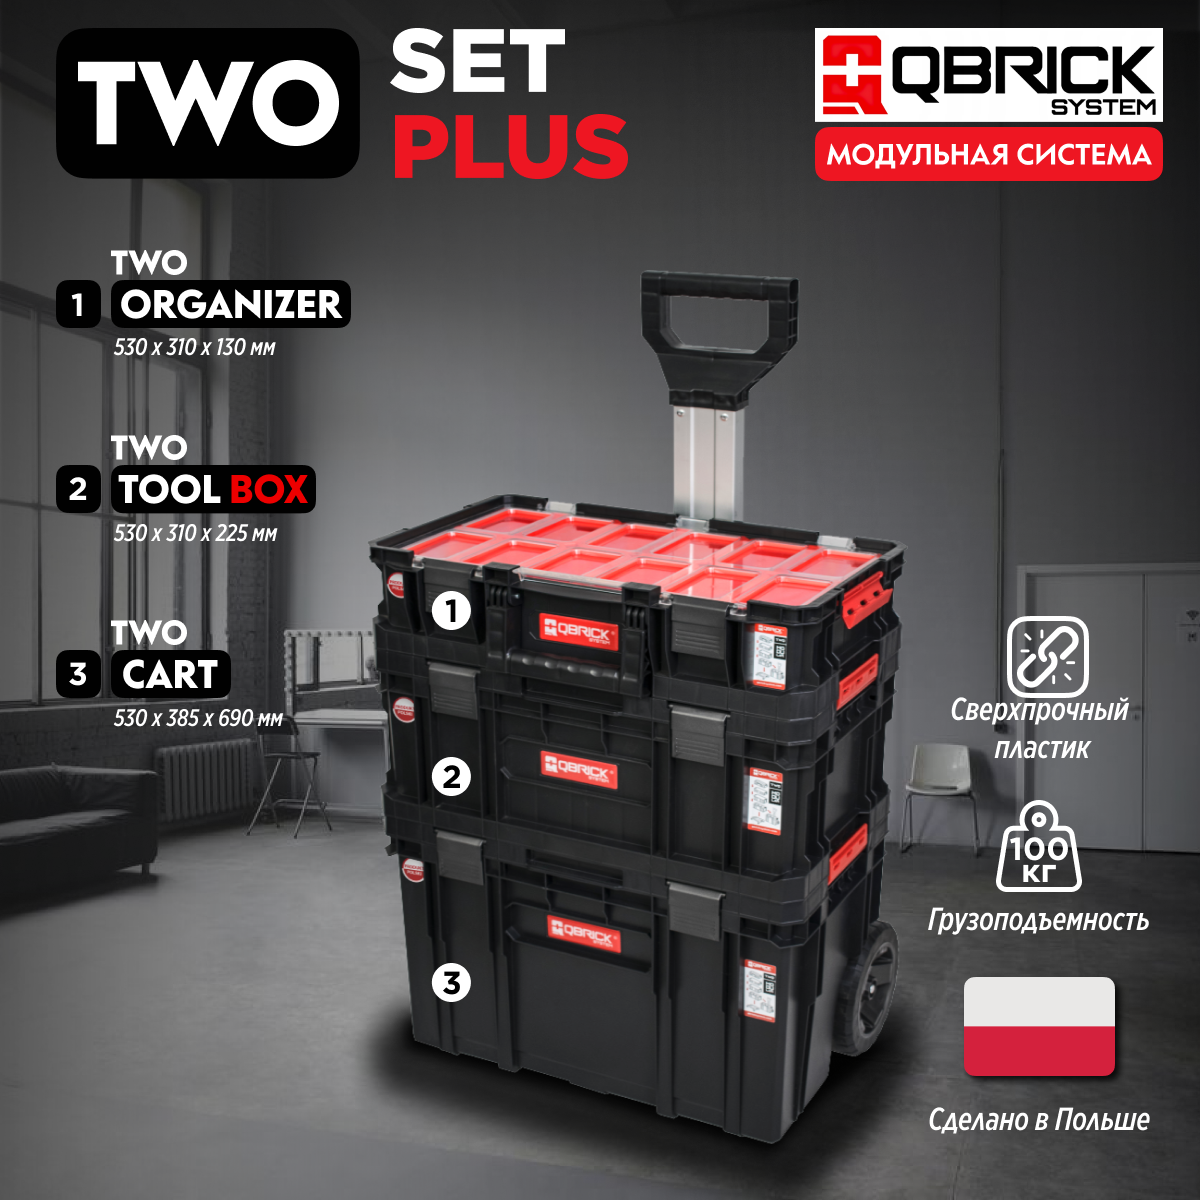 Набор ящиков для инструментов Qbrick System TWO Set Plus 1-Z251248PG001 тележка для инструментов 7 выдвижных ящиков выдвижная боковая перфорированная панель с и